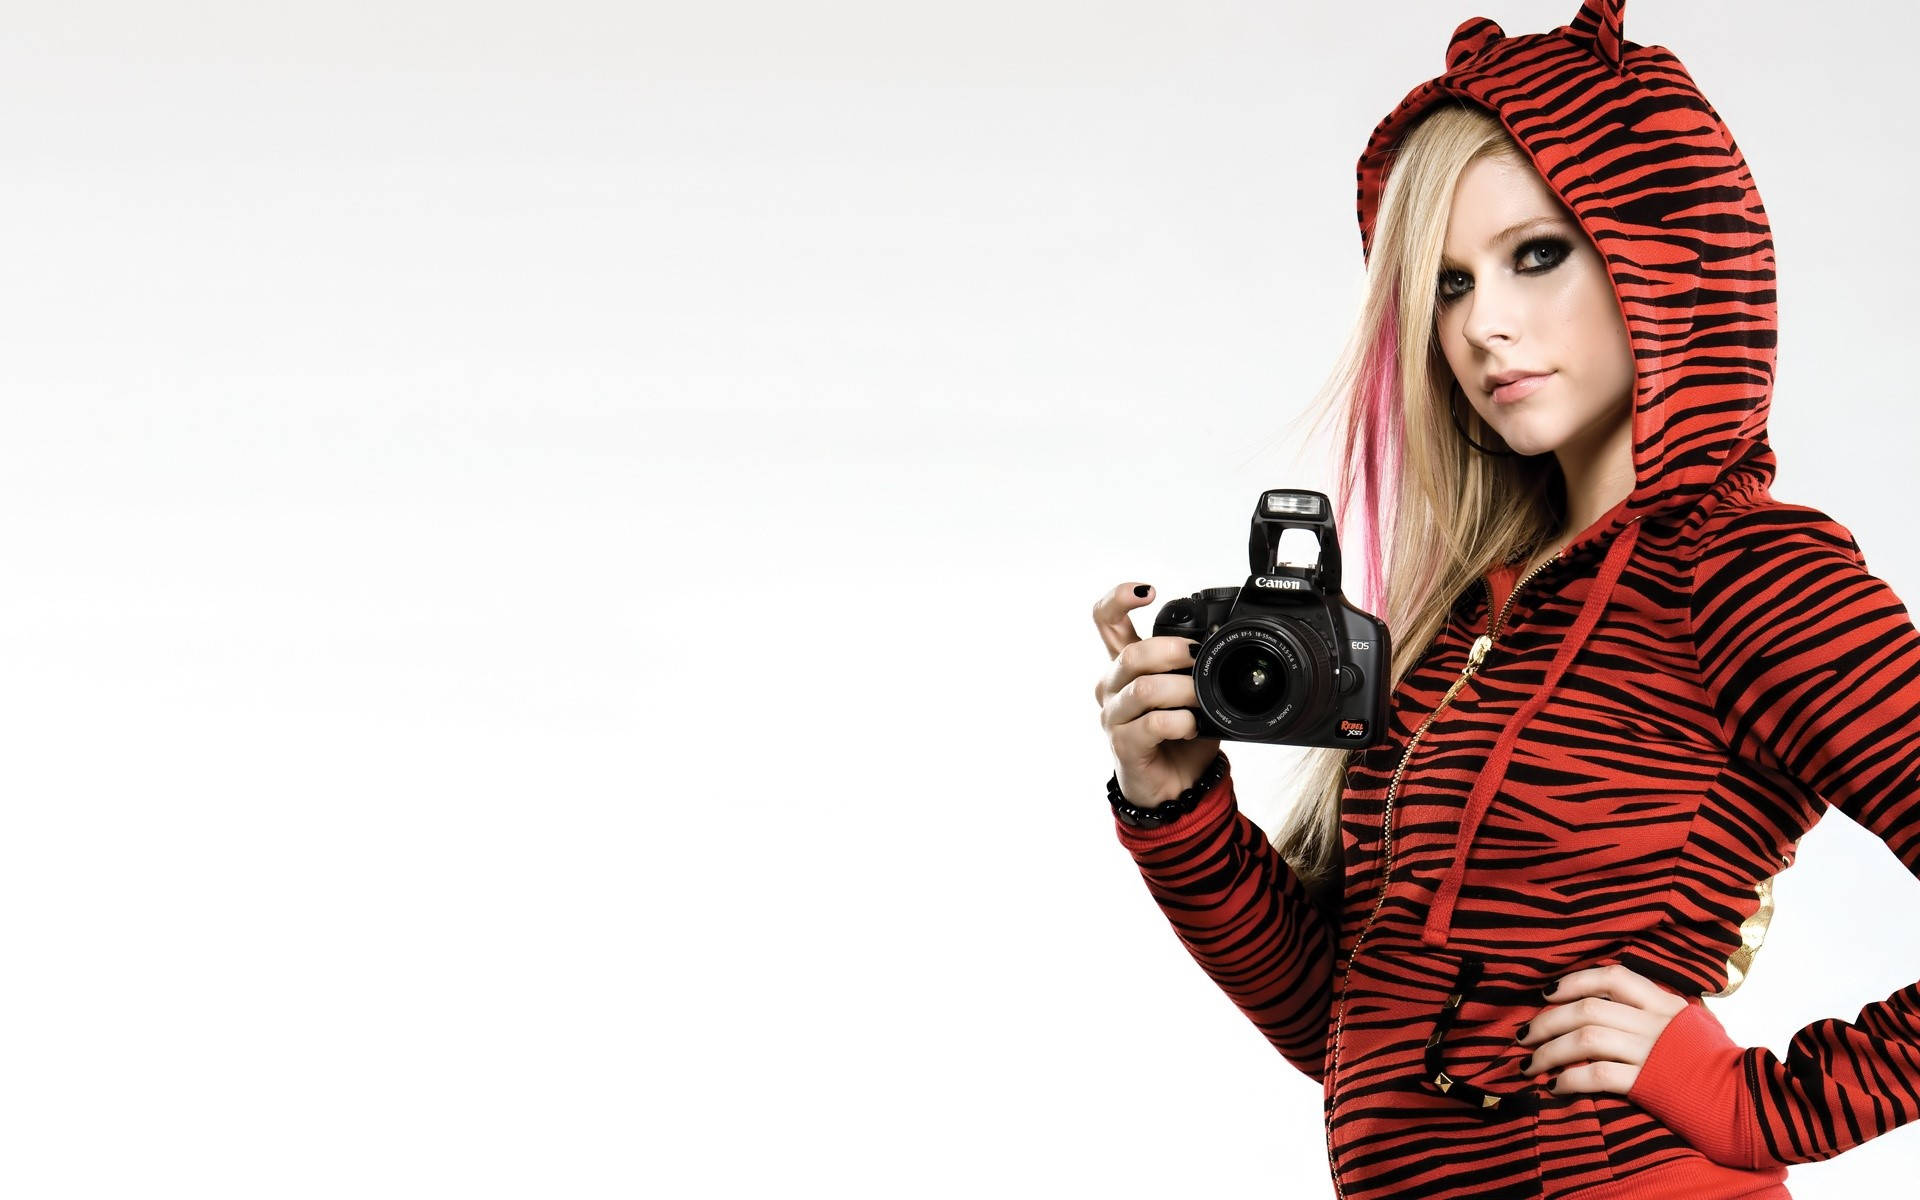 Avril Lavigne Rocking A Stylish Tiger Jacket Background